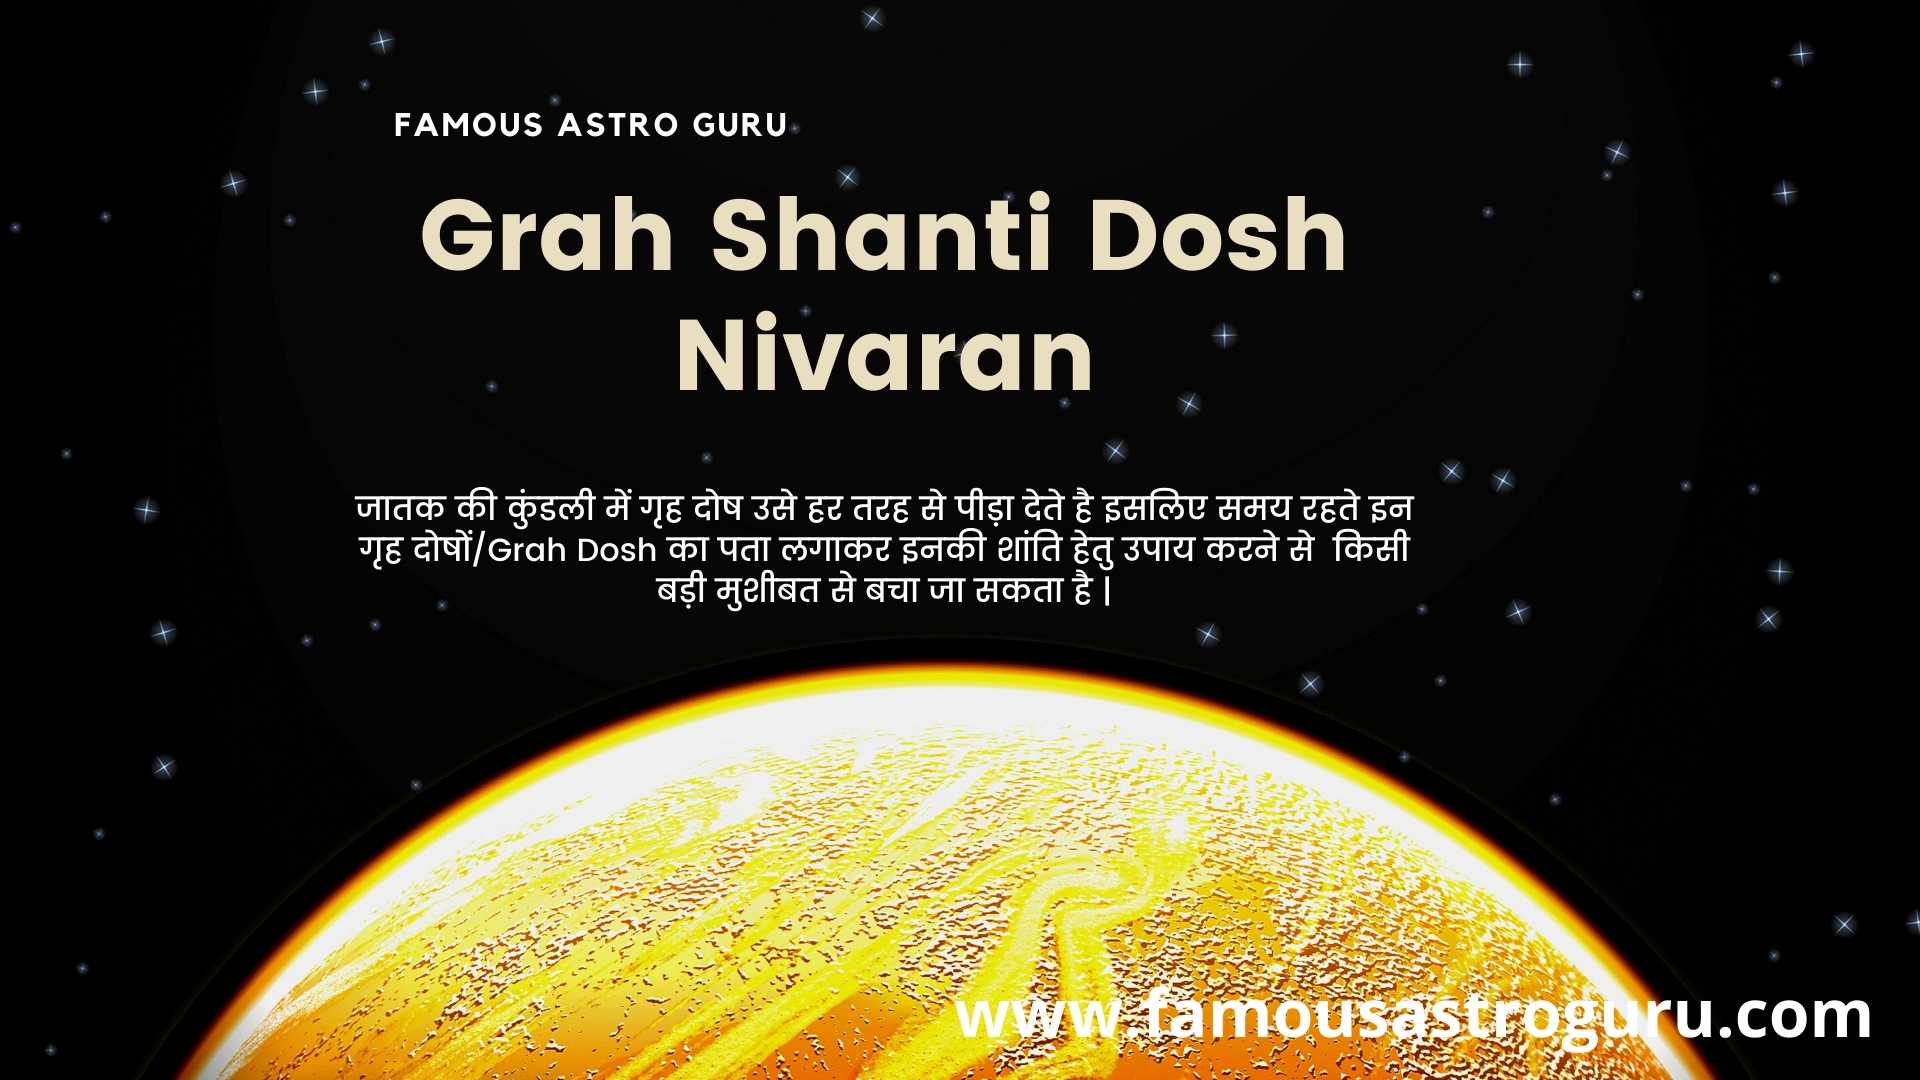 Grah Shanti Dosh Nivaran